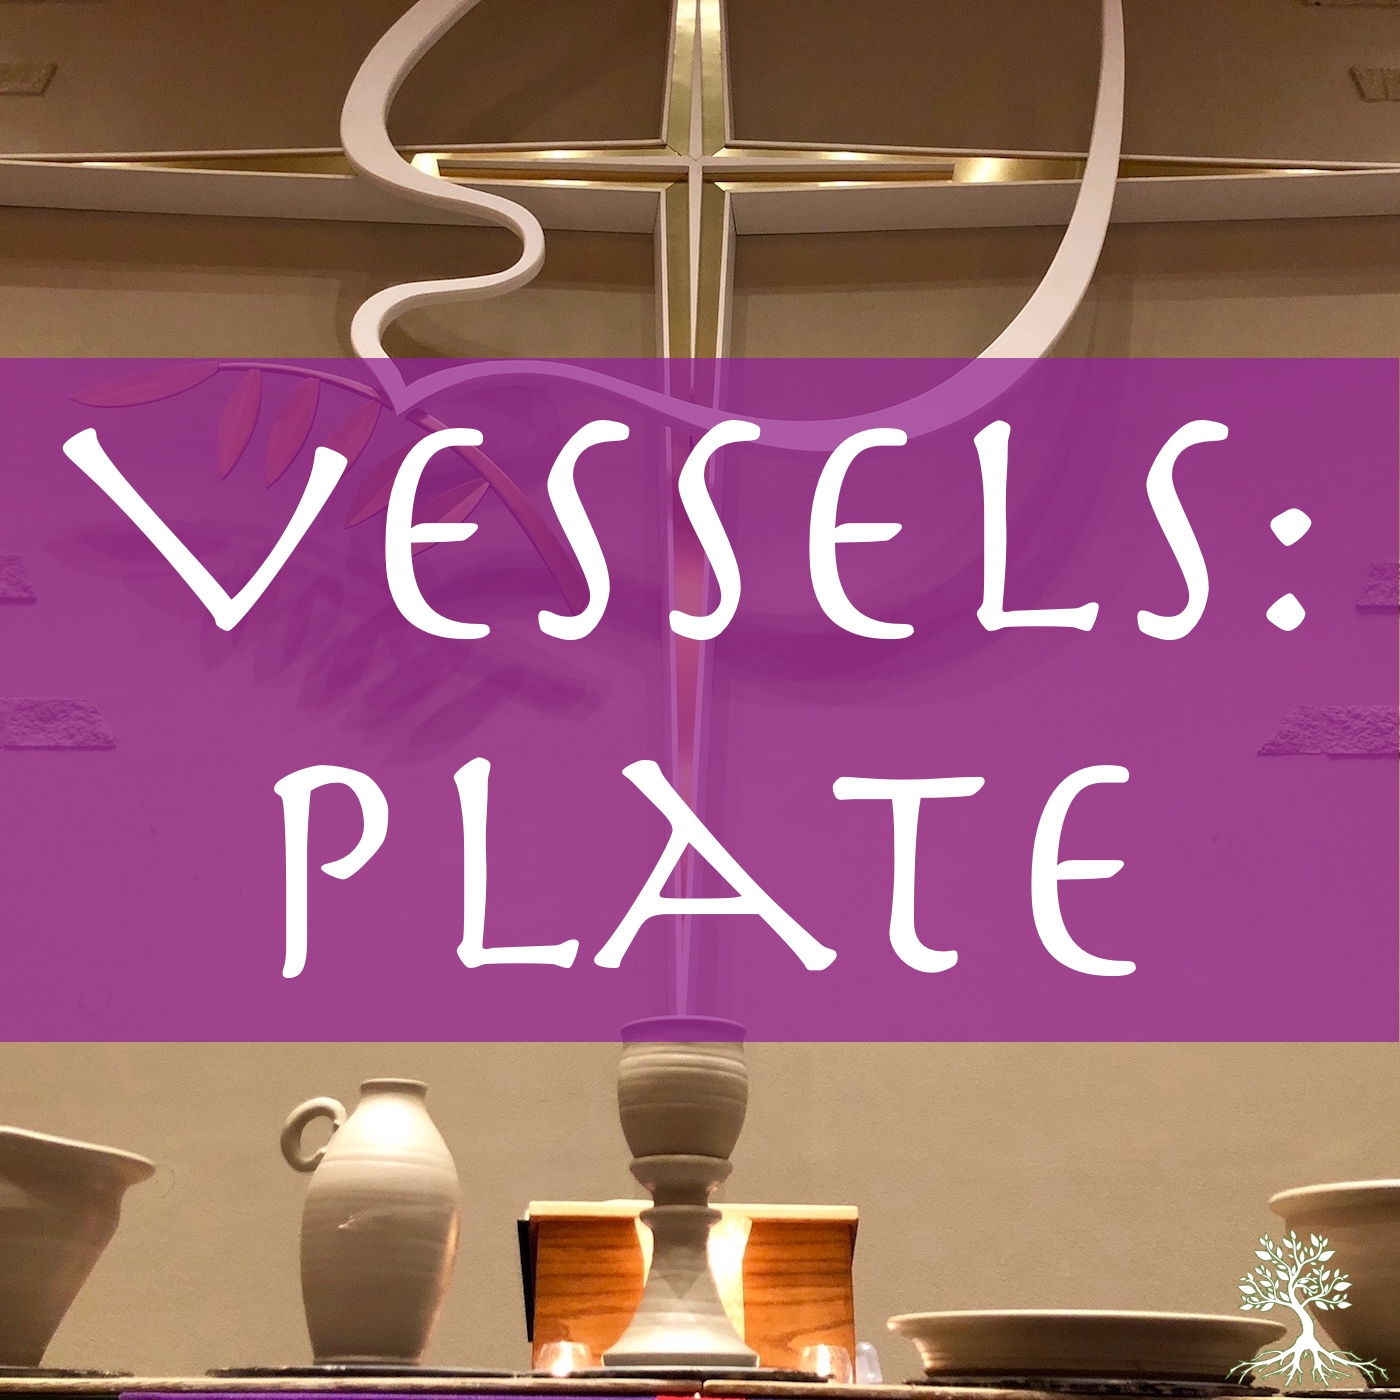 Vessels: Plate (Katie Rykal 2/28/18)